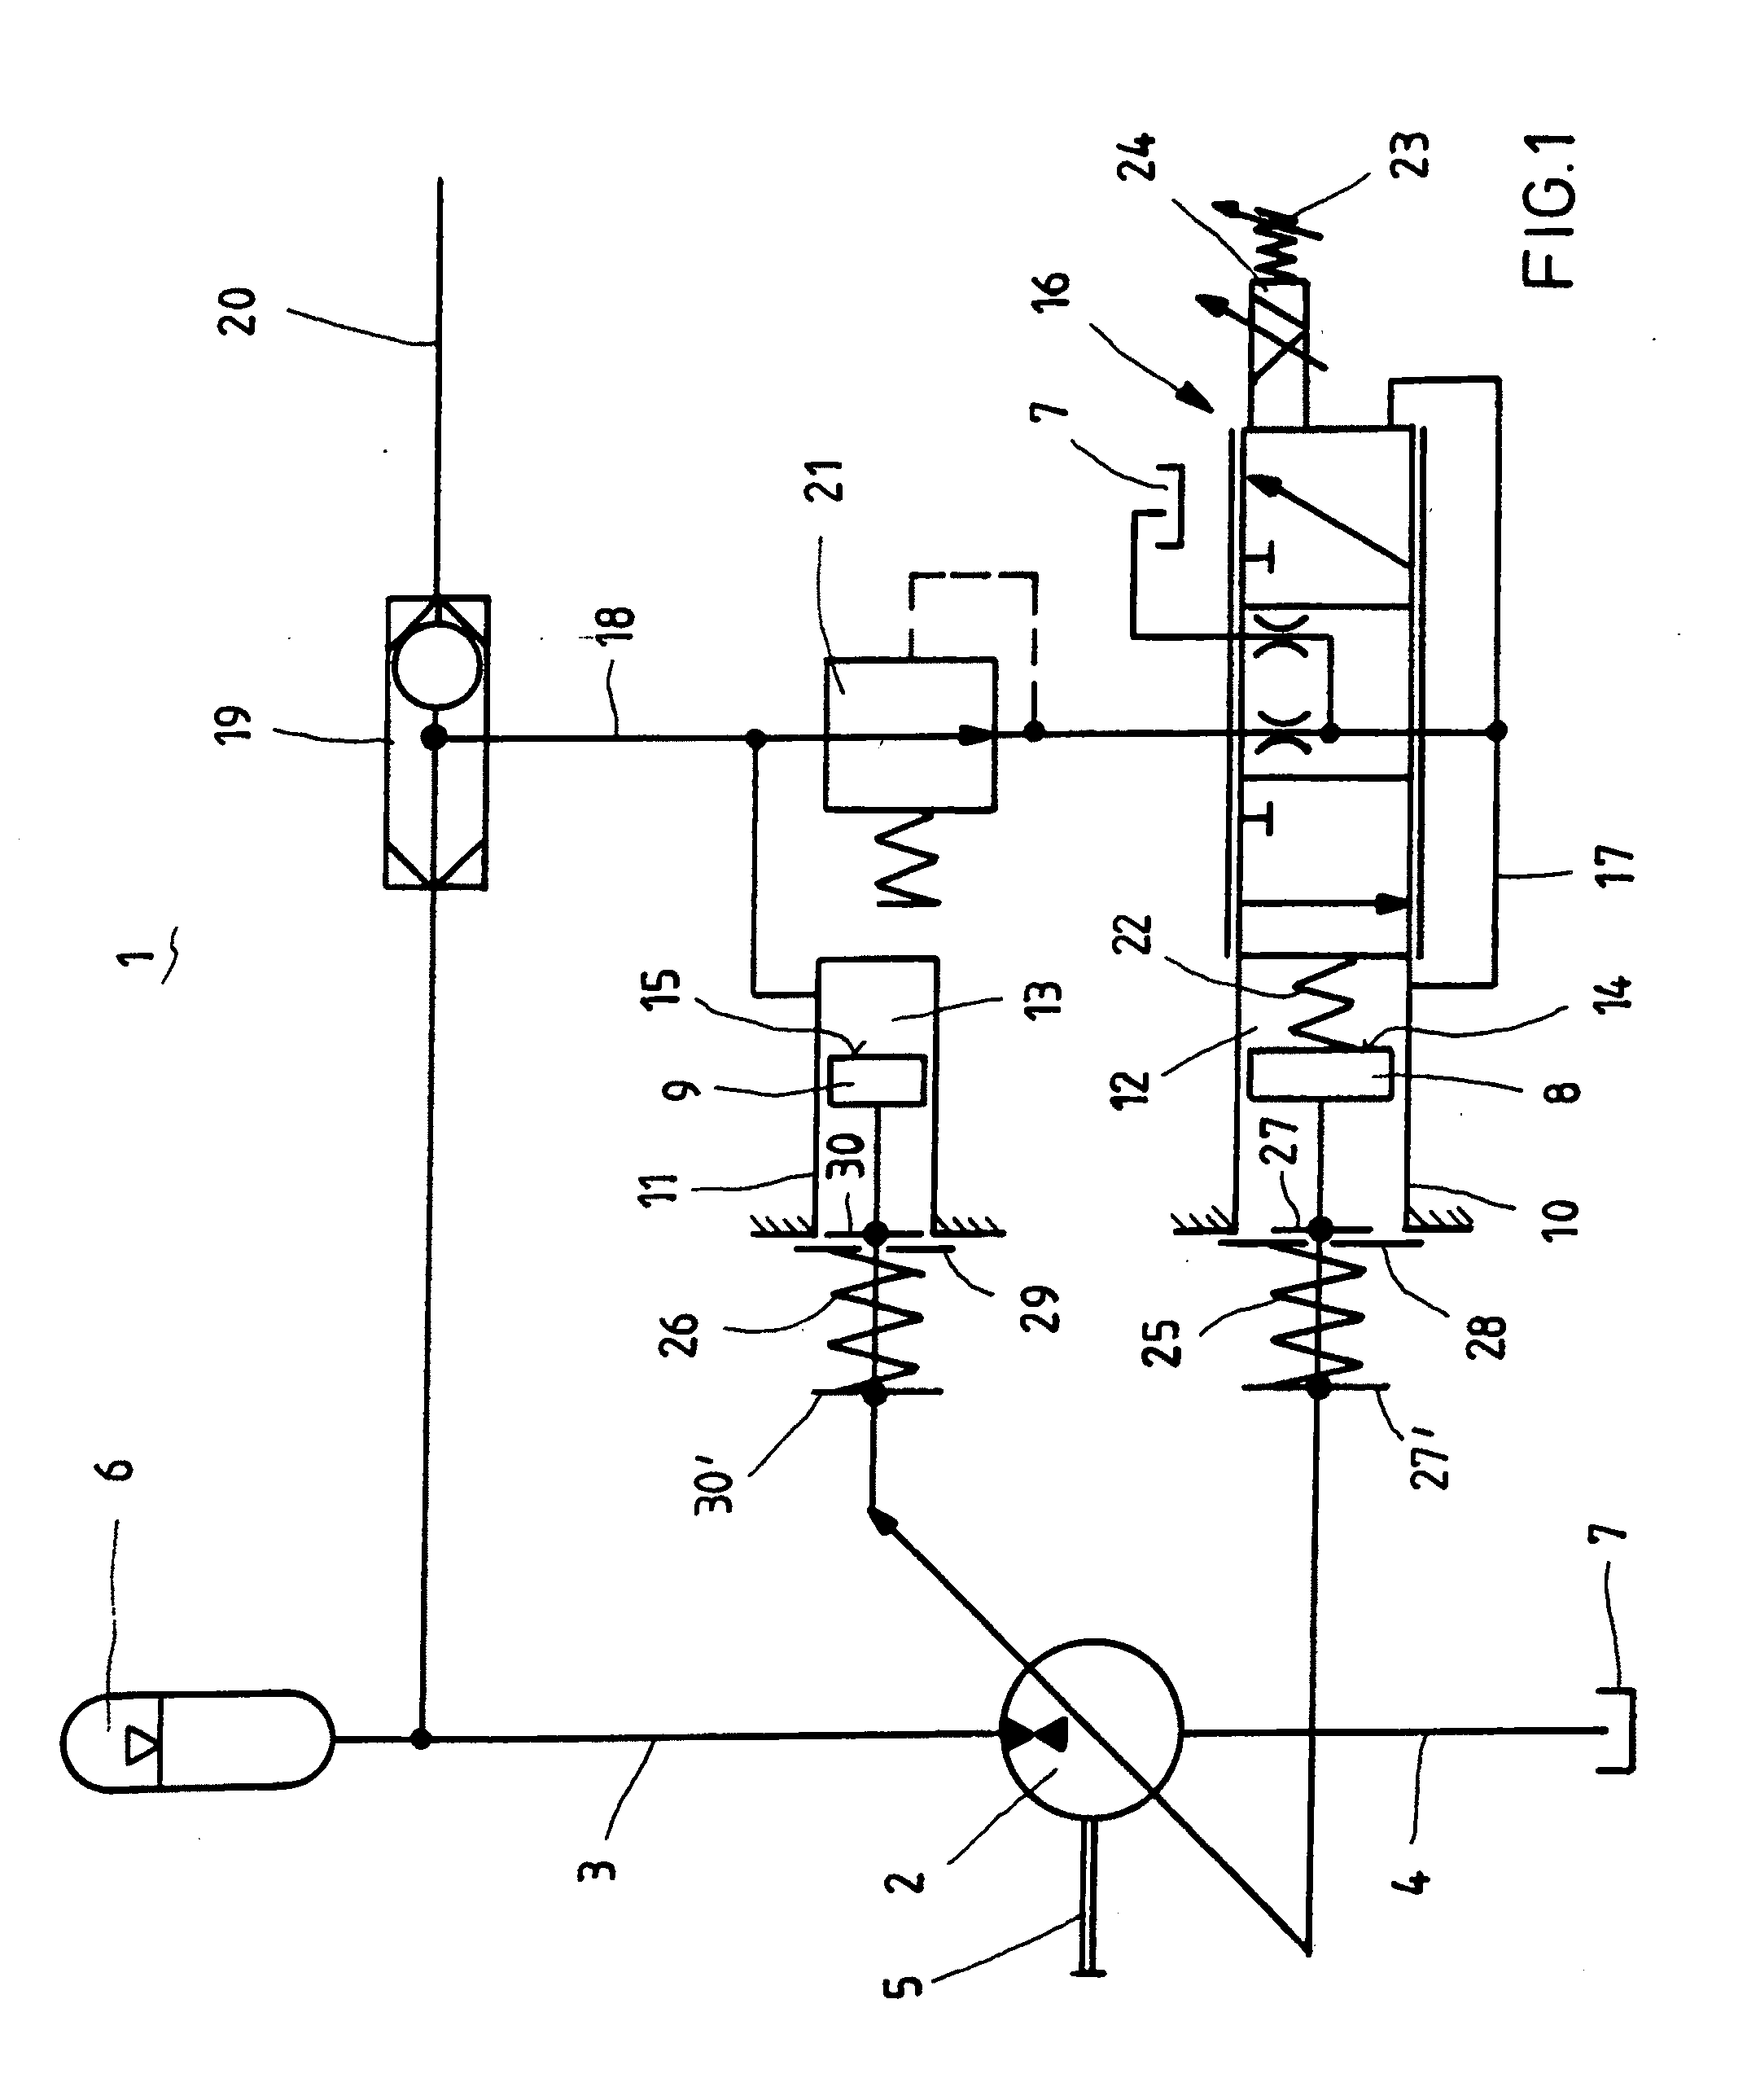 Hydraulic system having an adjustable hydrostatic machine